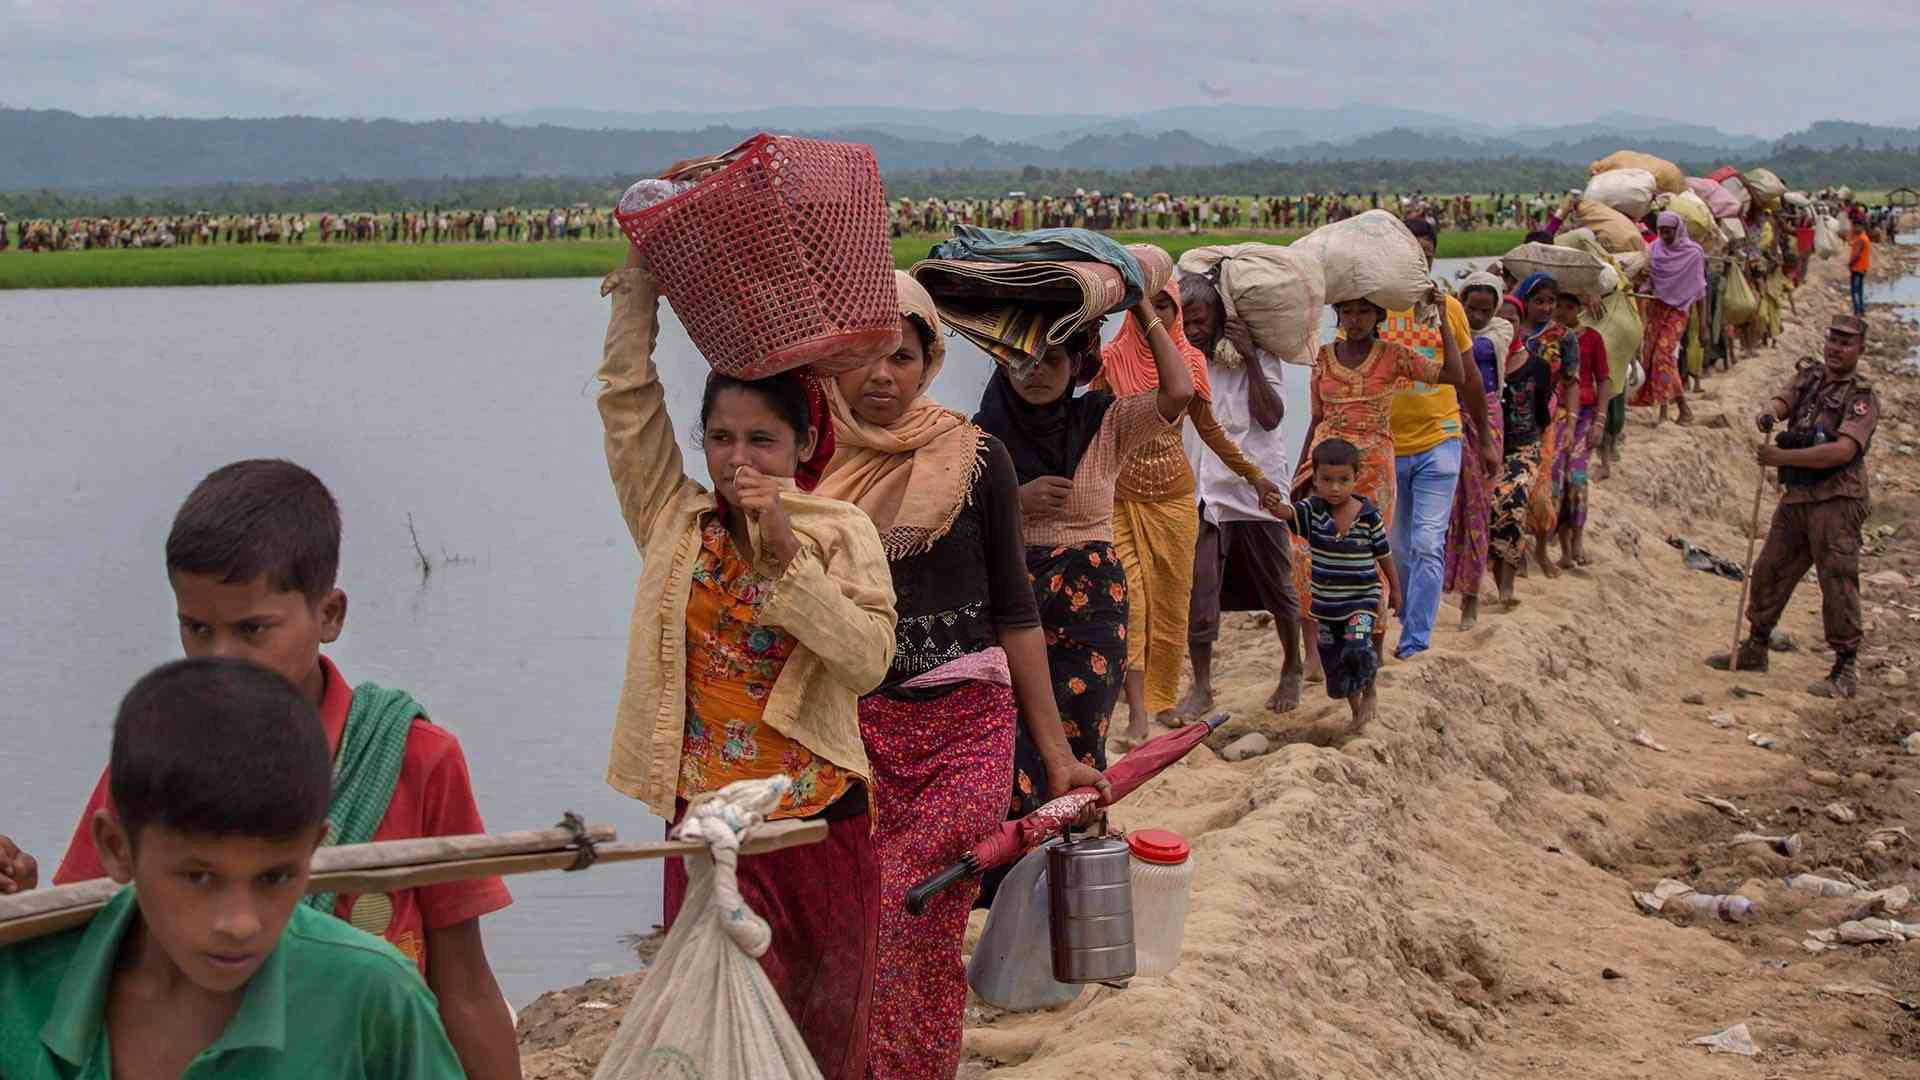  Manish sisodia on Rohingya Refugees issue  - Satya Hindi